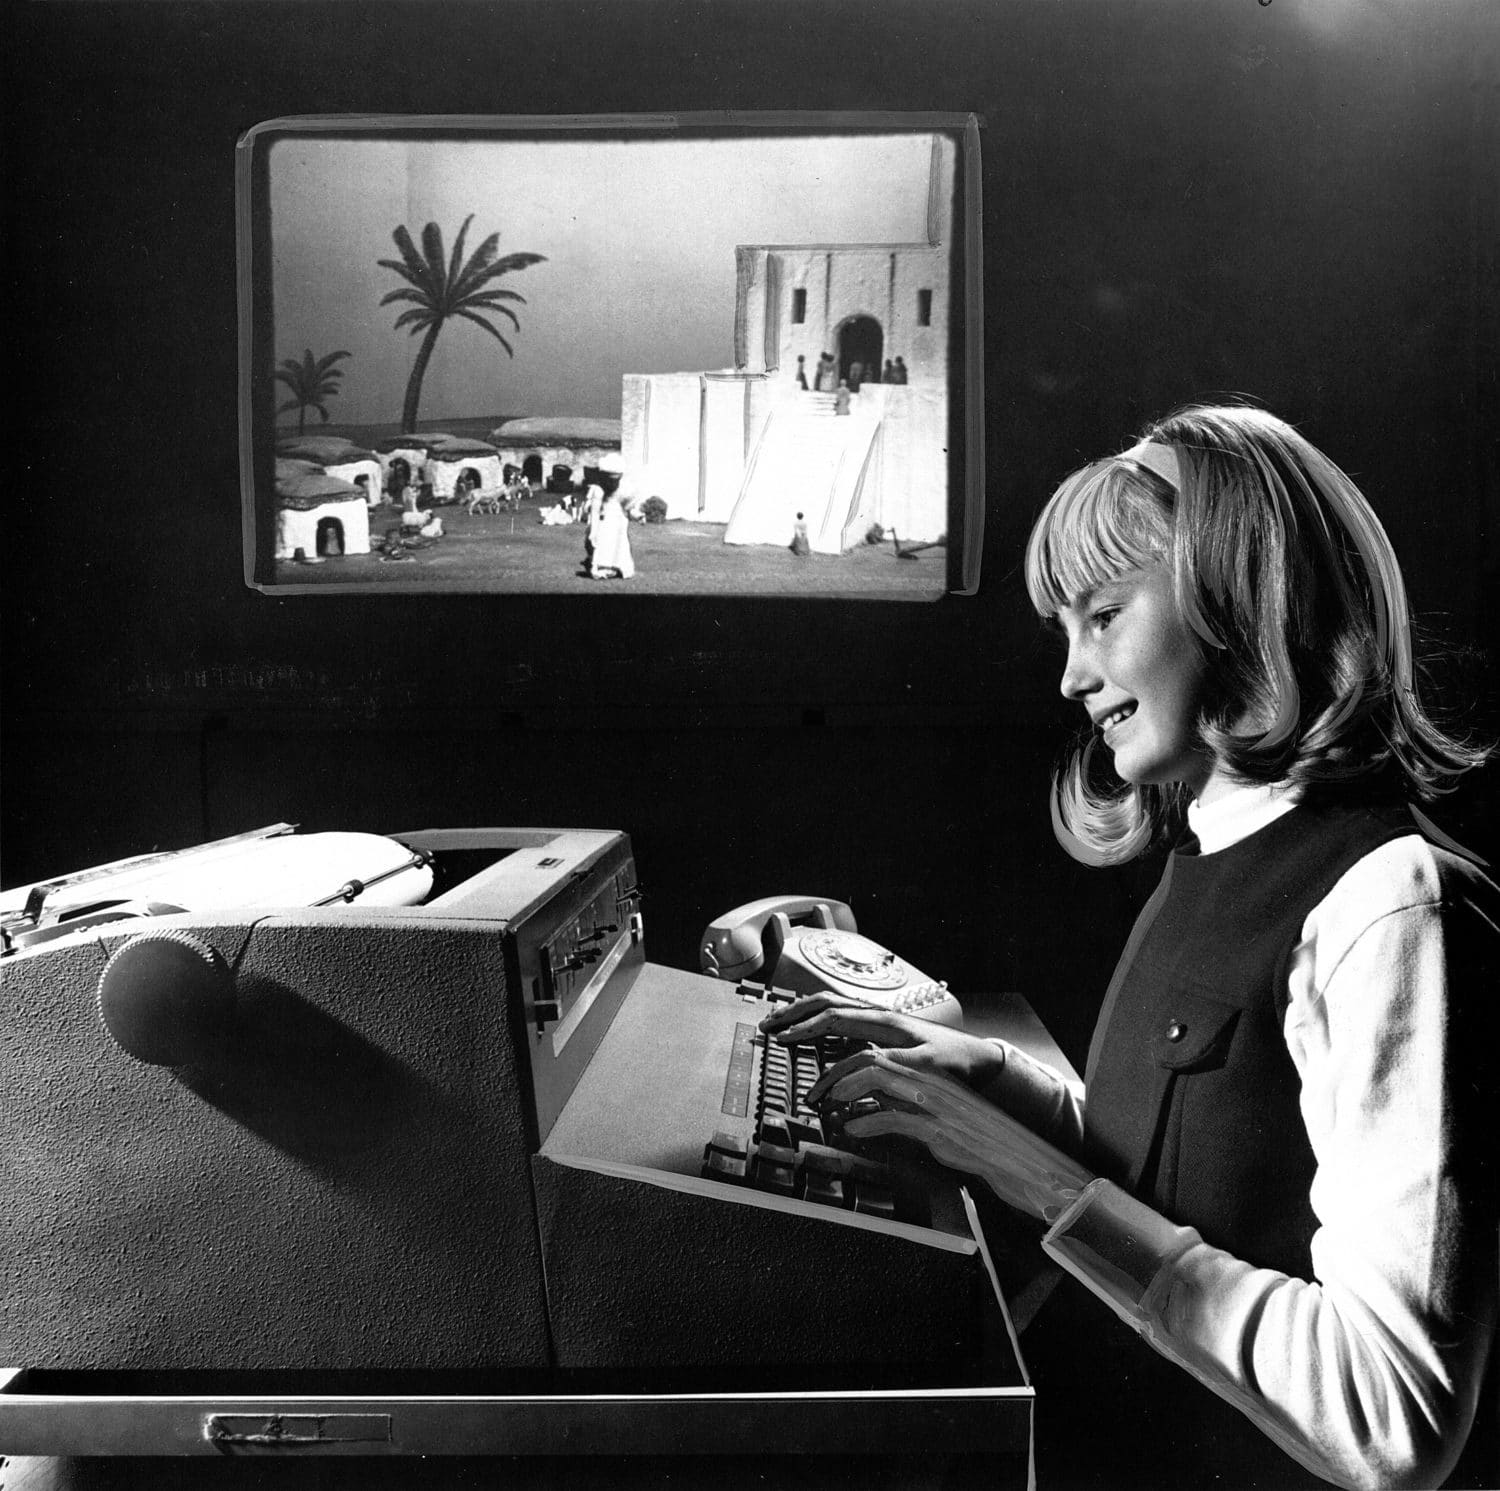 (Тази снимка от 1968 г. показва ученичка, която играе шумерска игра. Действието се илюстрира с диапозитив на заден план. (Източник: Уикипедия))